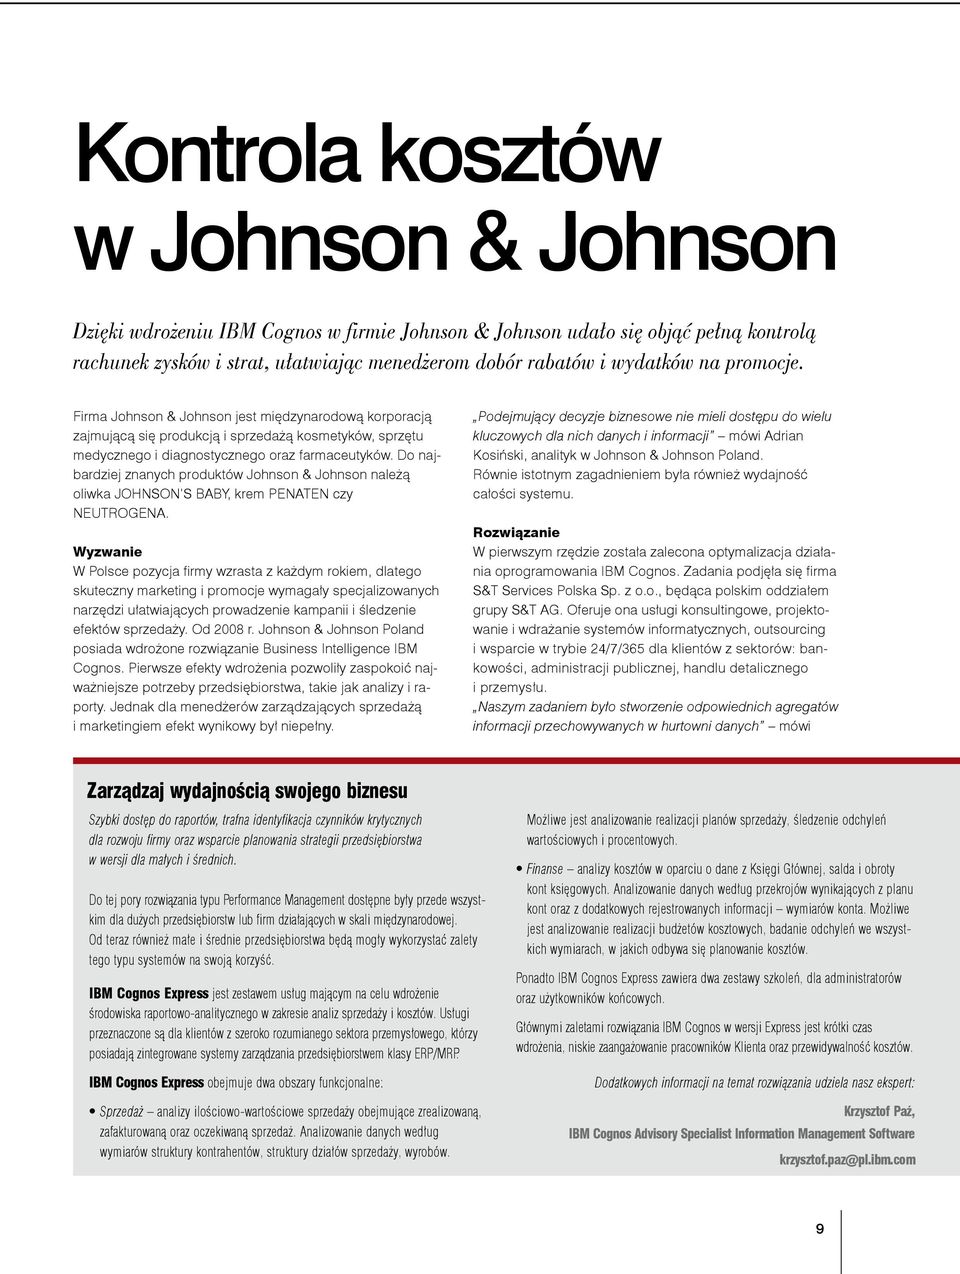 Do najbardziej znanych produktów Johnson & Johnson należą oliwka JOHNSON S BABY, krem PENATEN czy NEUTROGENA.